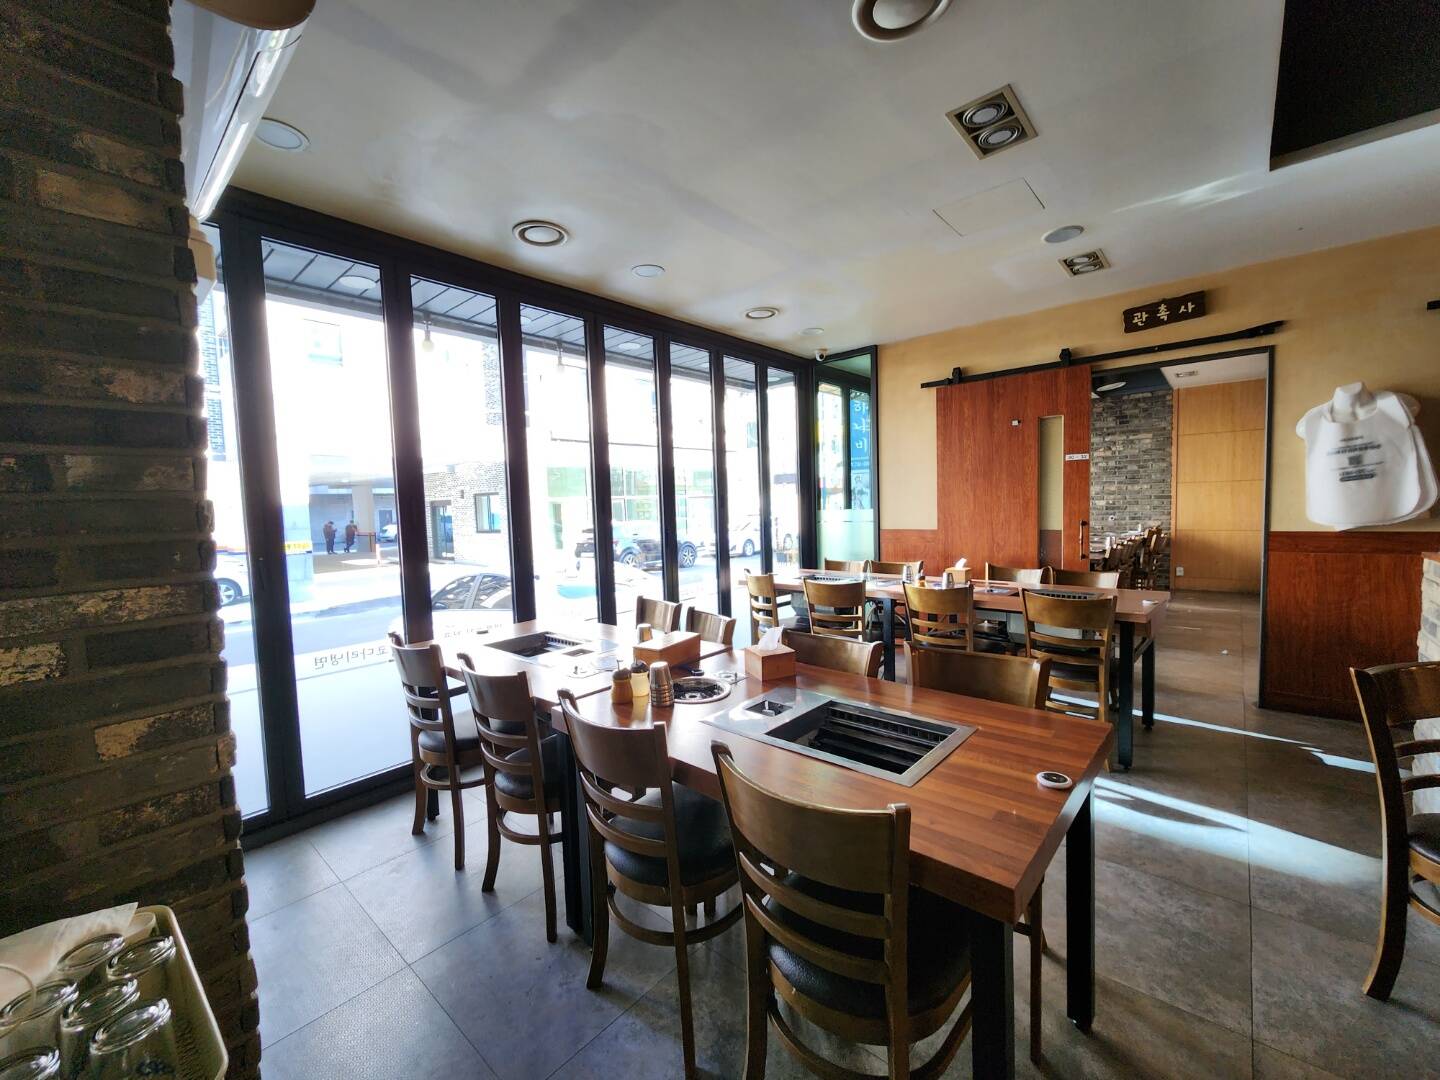 따뜻하고 현대적인 느낌의 갈비 맛집 대형 식당